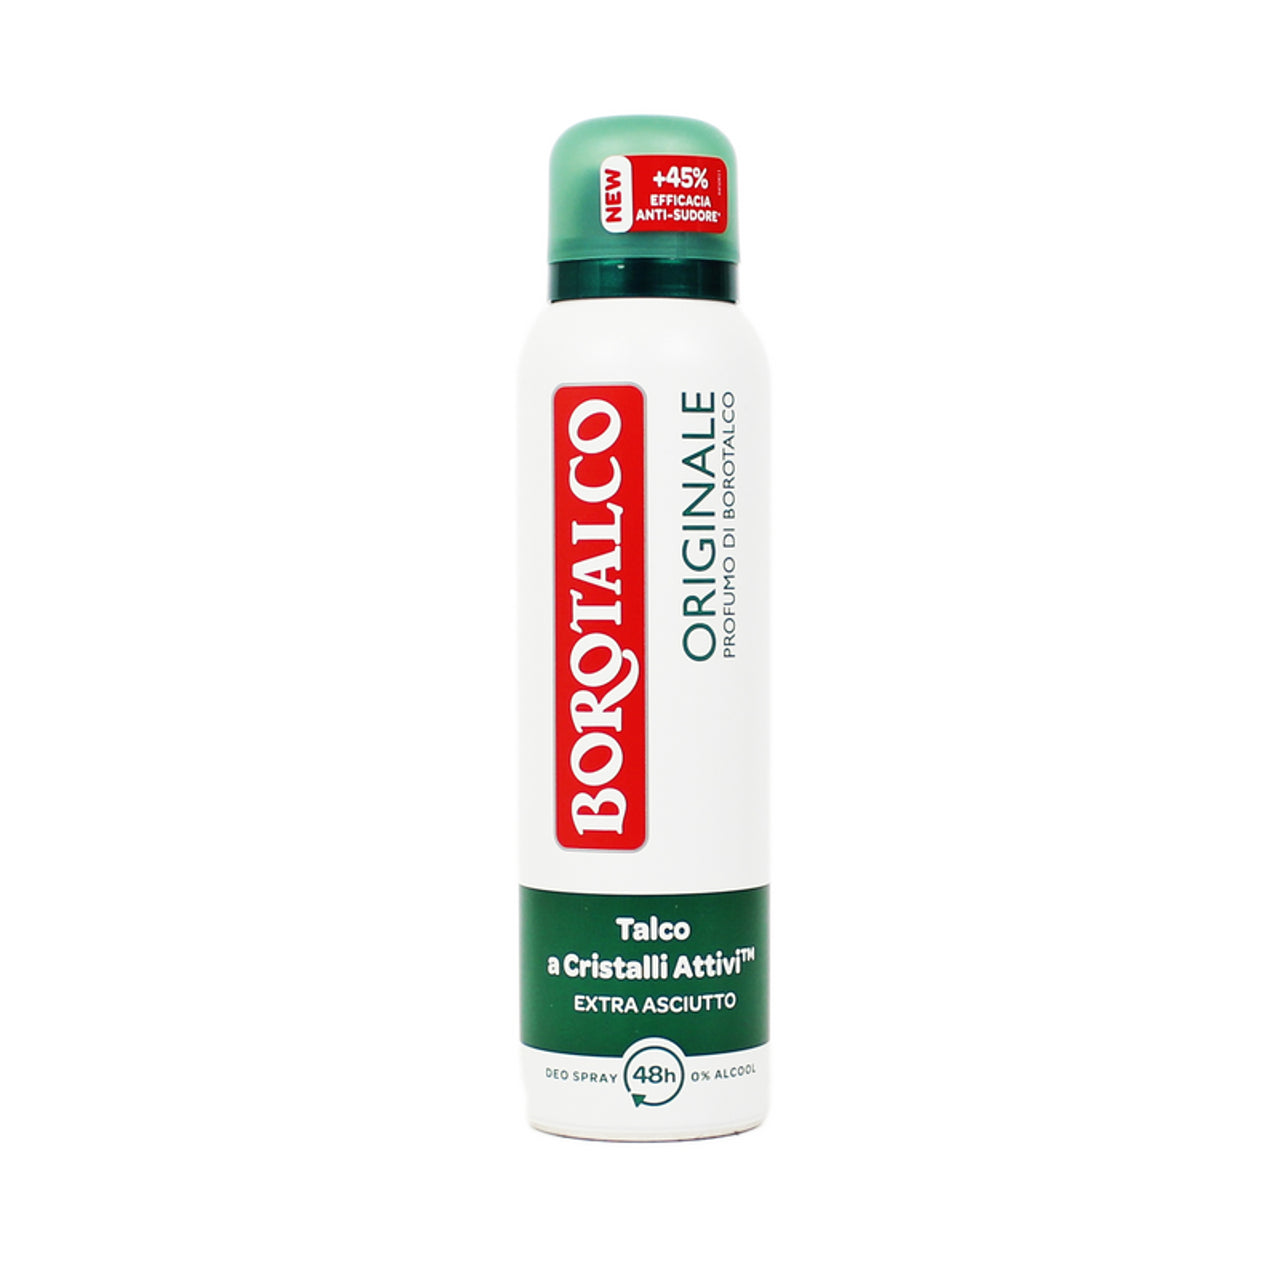 Originele Borotalco Deodorant Spray -geur van Borotalco 150 ml